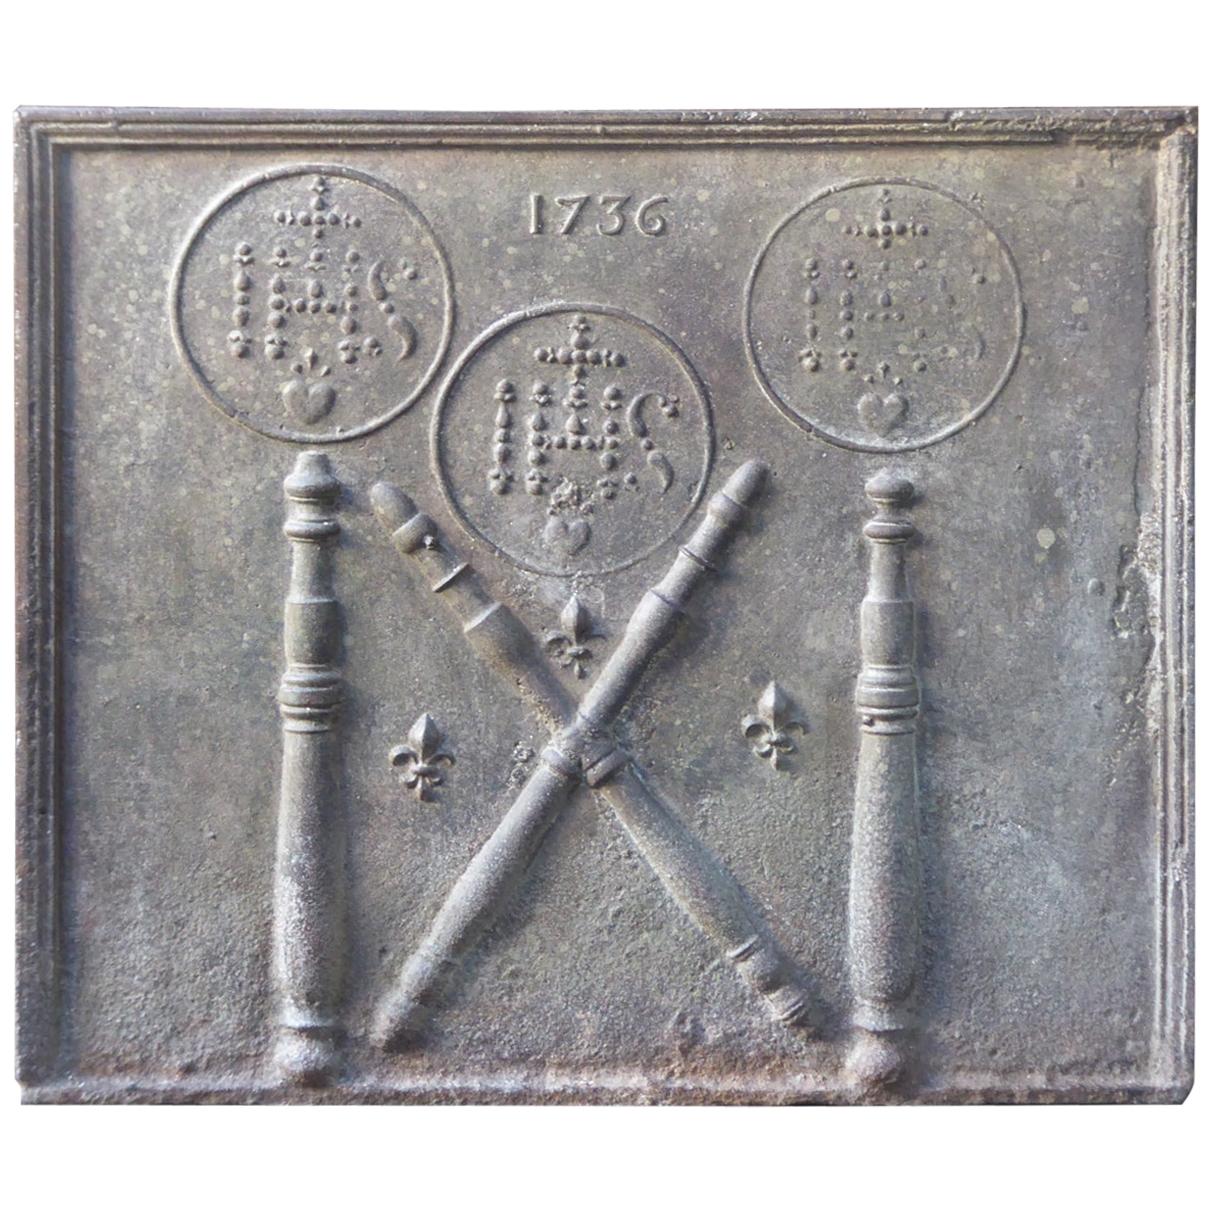 Französische Kamin-/Rückensockel des 18. Jahrhunderts mit mittelalterlichen IHS-Monogrammen